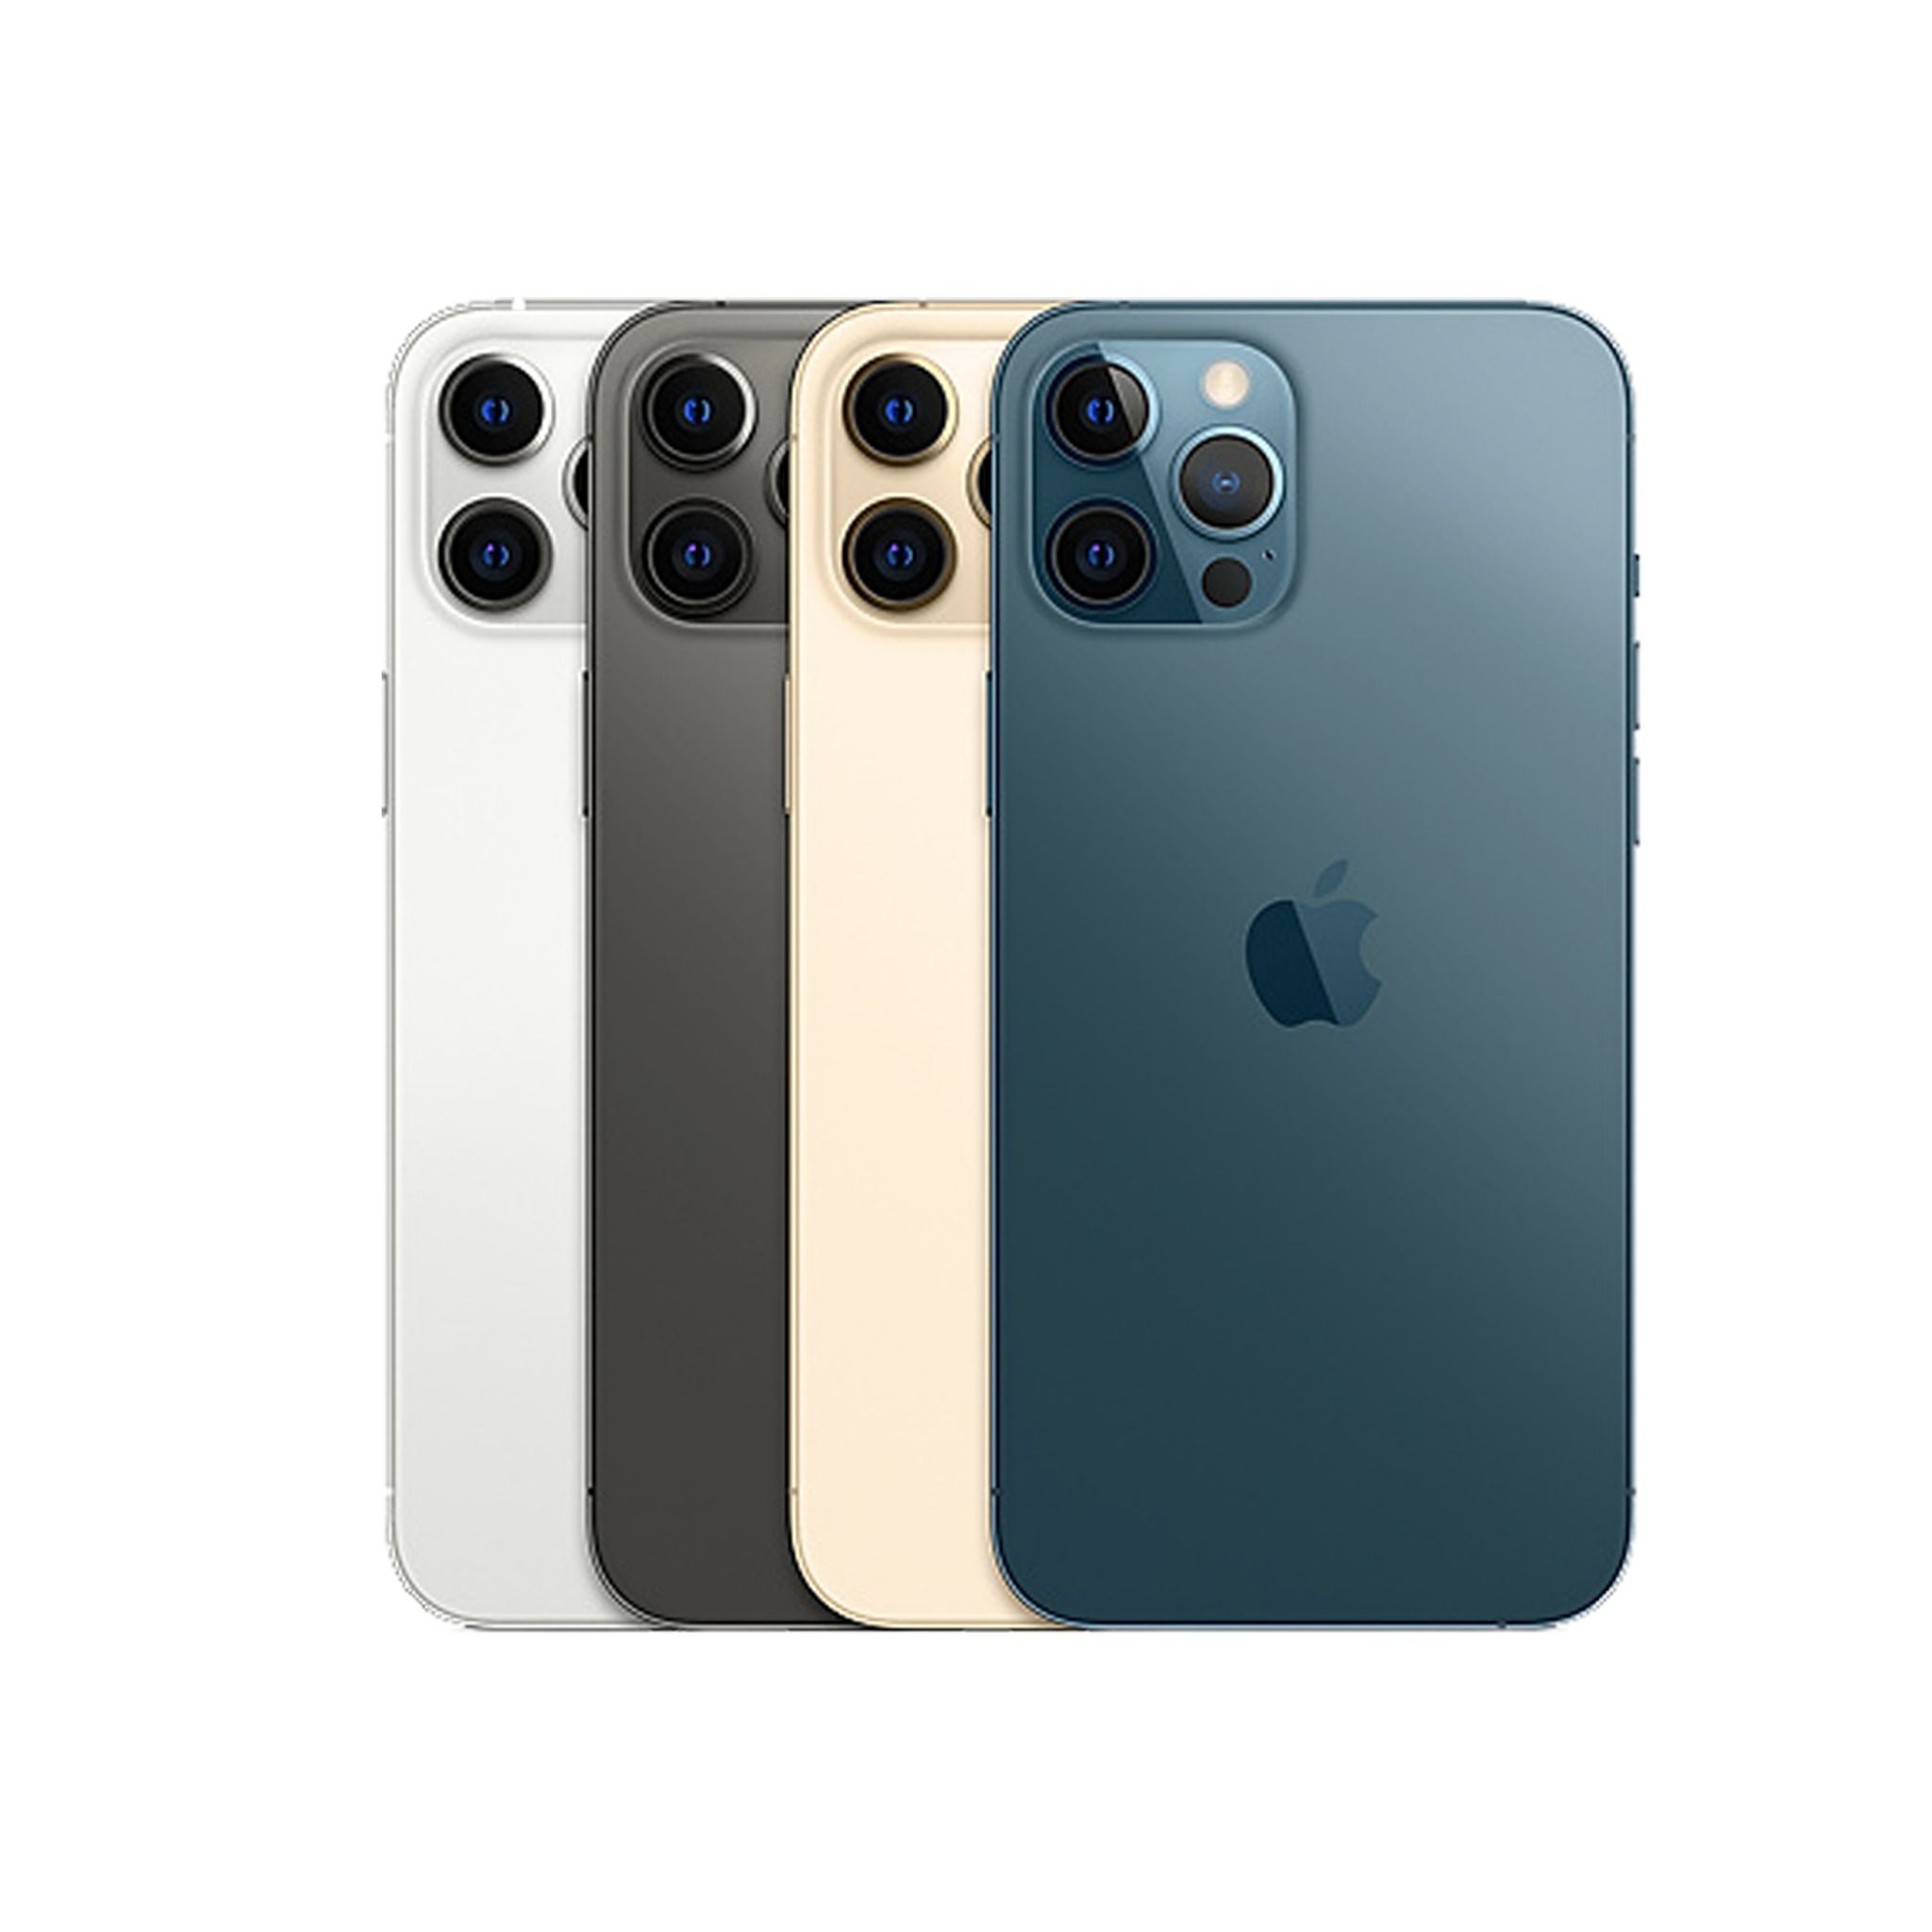 iPhone 12 Pro Max 512GB Quốc Tế - Đã Qua Sử Dụng